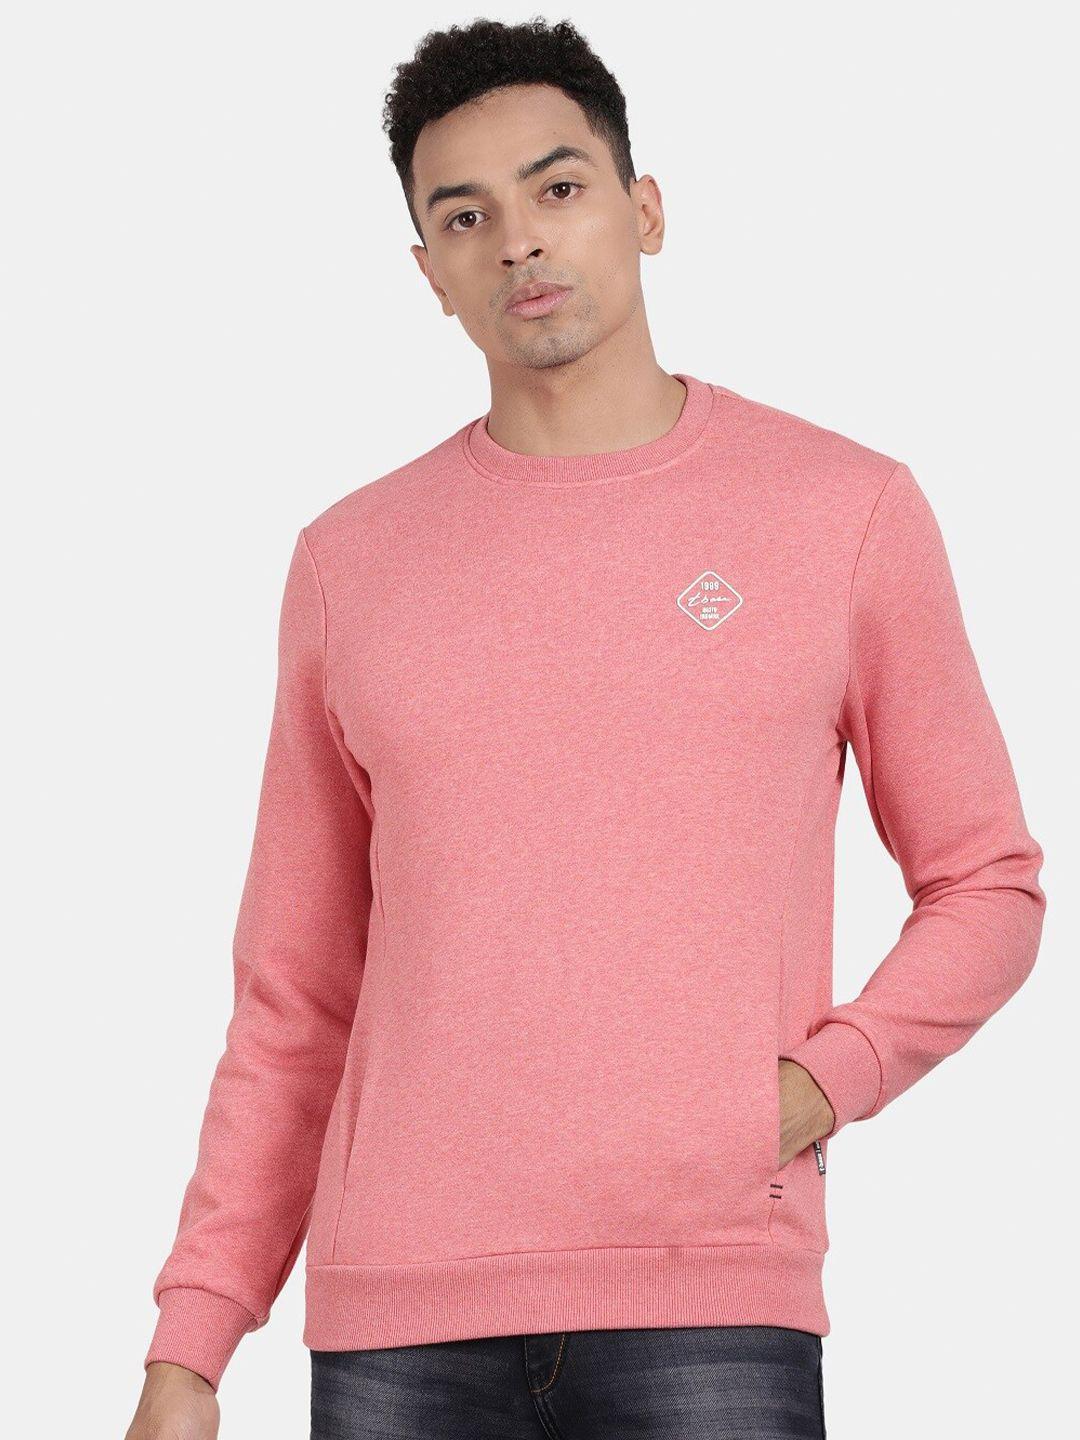 t-base round neck cotton sweatshirt